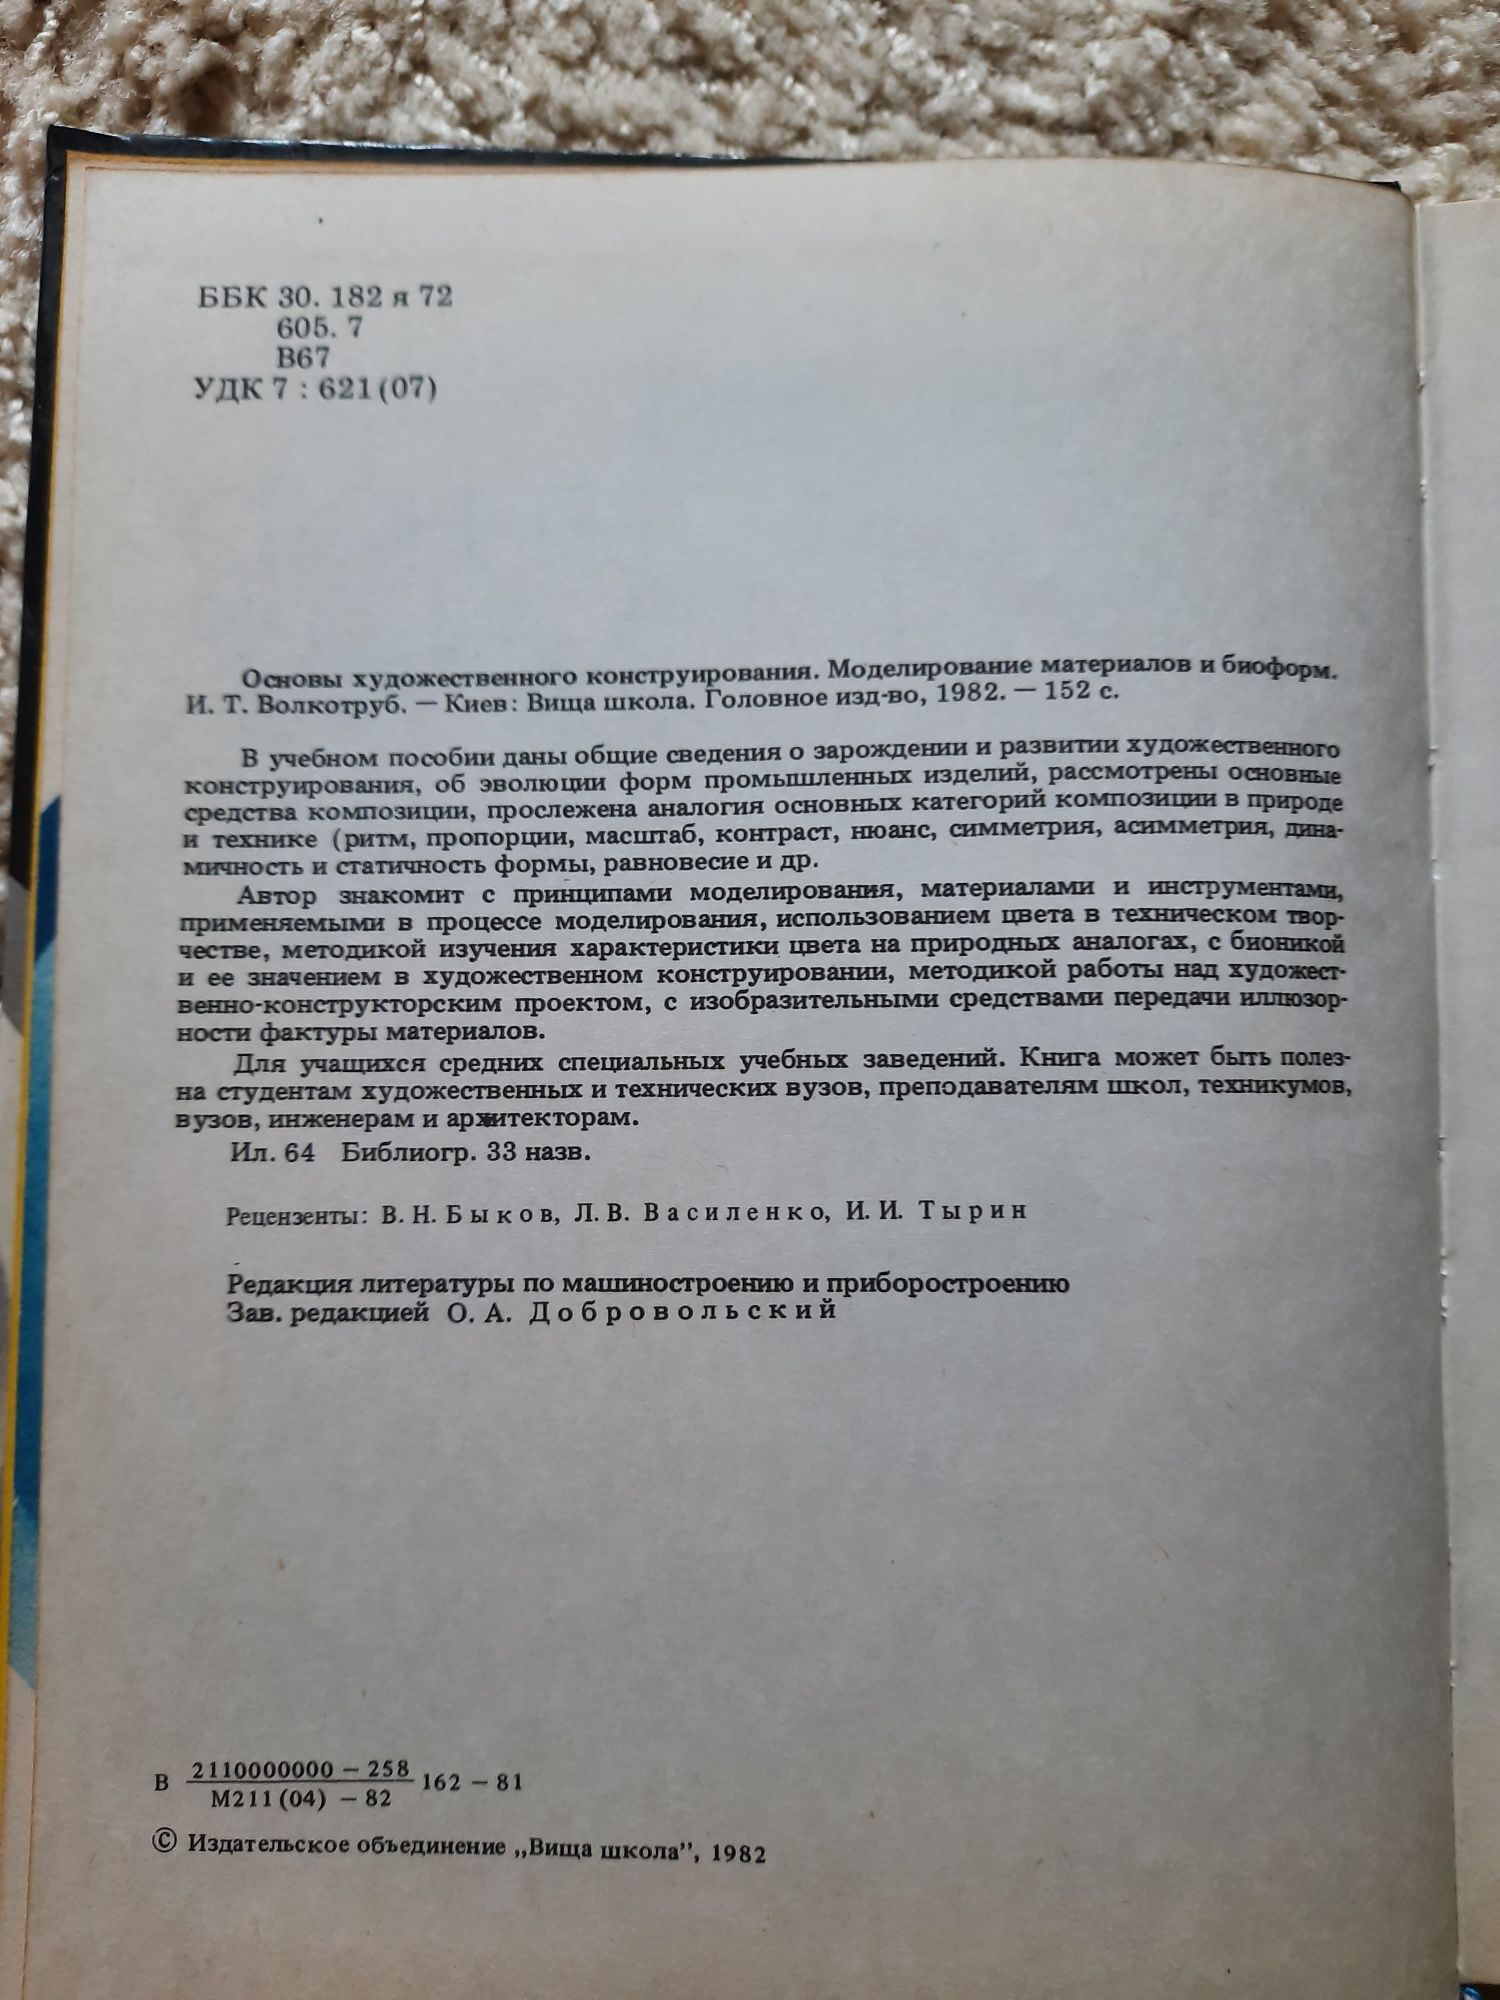 Основы художественного конструирования
И.Т.Волкотруб, 1982 г.